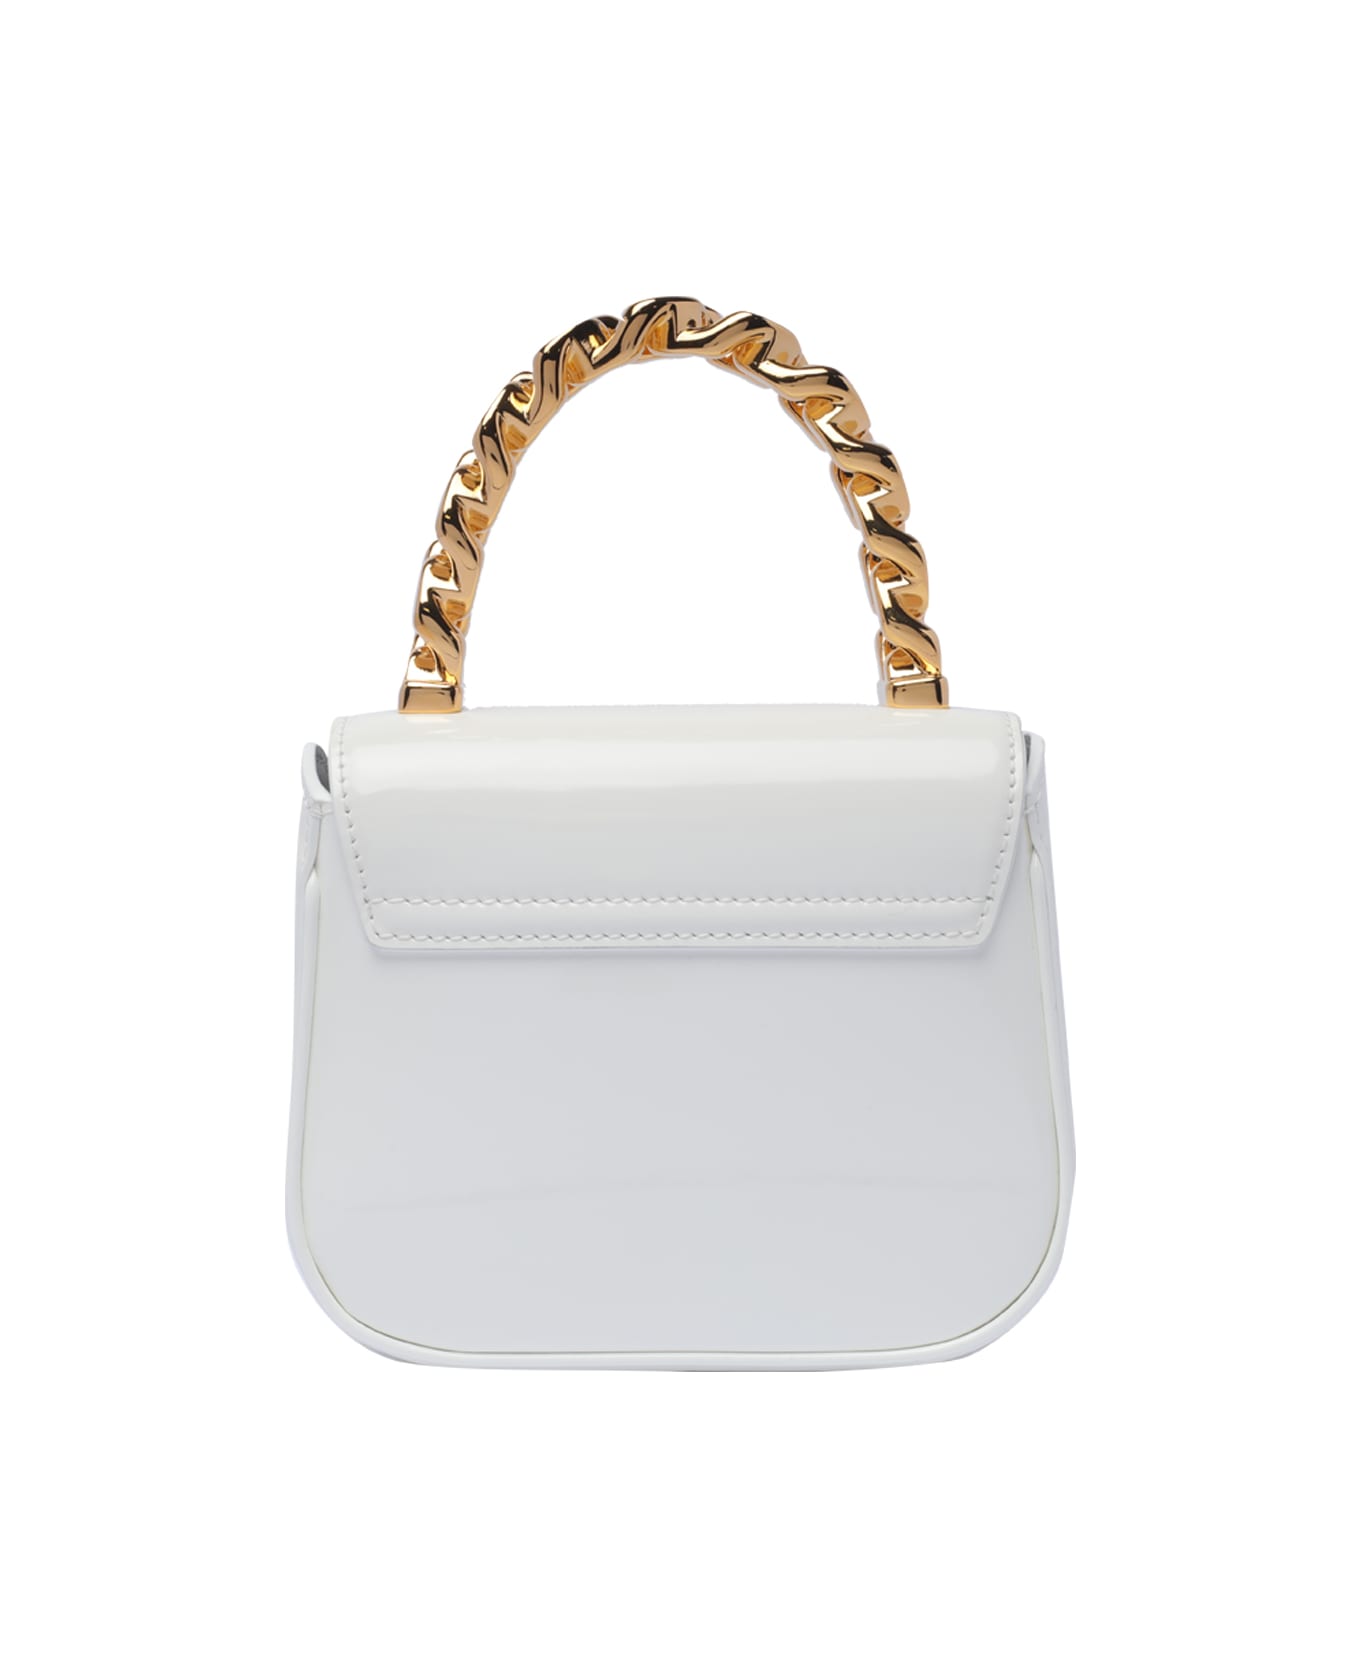 Versace Mini La Medusa Handbag - White